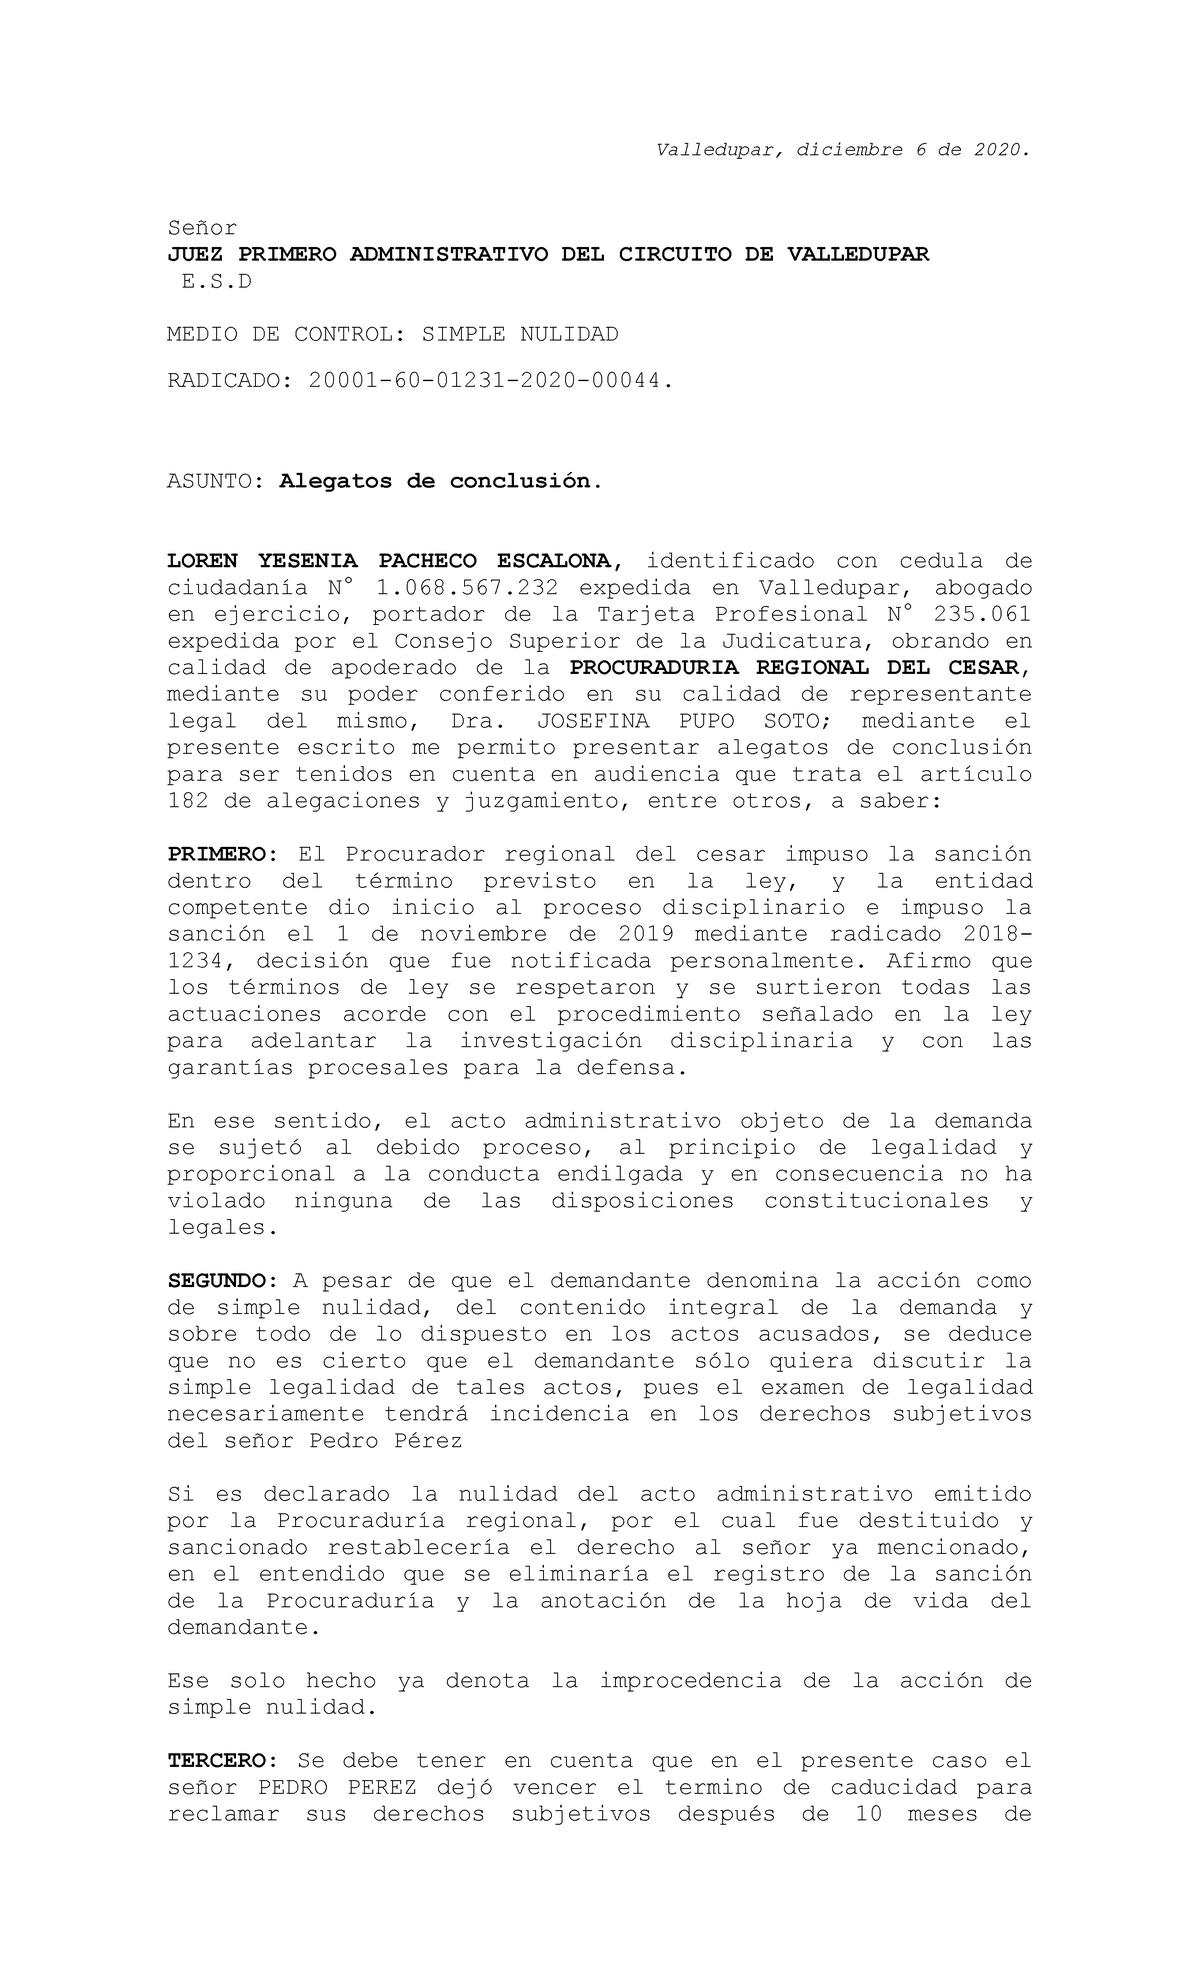 Alegatos DE Conclusion - Valledupar, diciembre 6 de 2020. Señor JUEZ  PRIMERO ADMINISTRATIVO DEL - Studocu